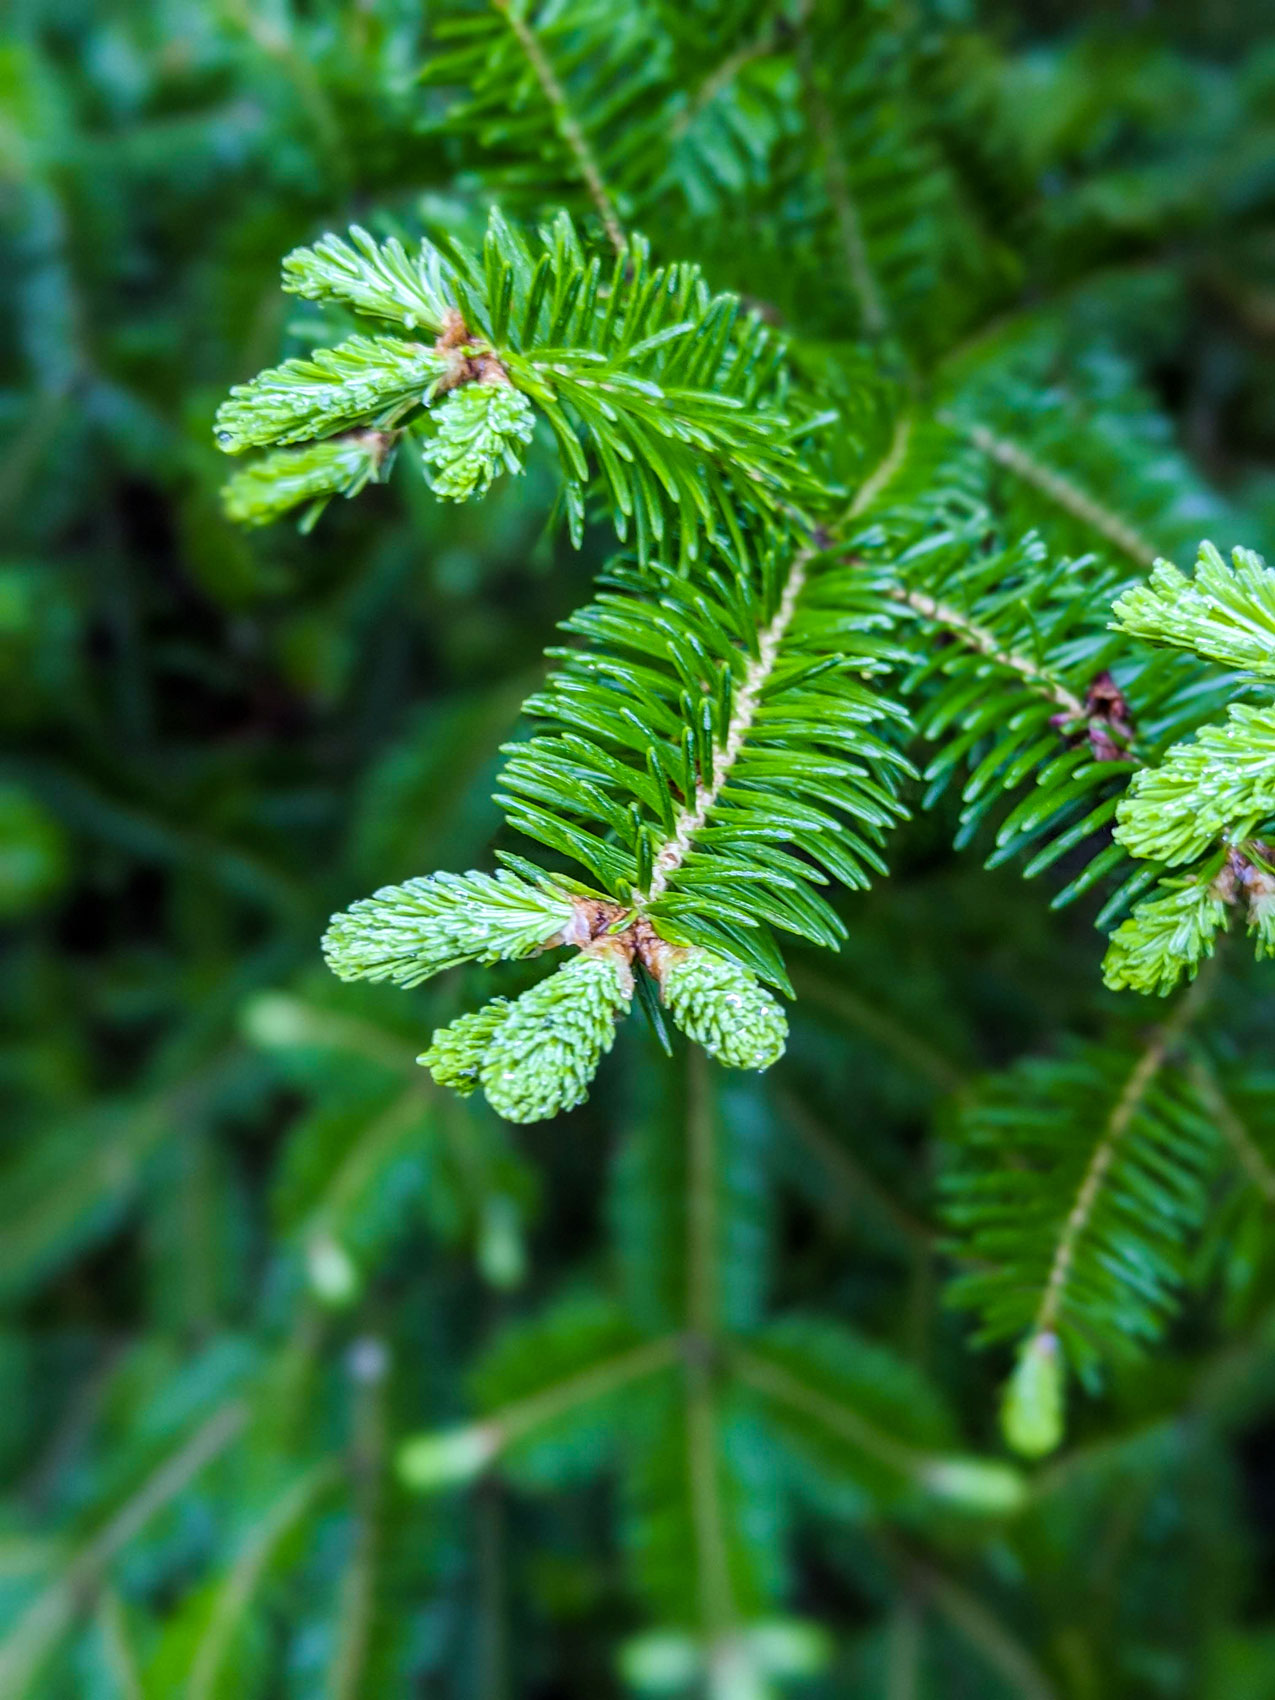 Basalm fir tips growing.